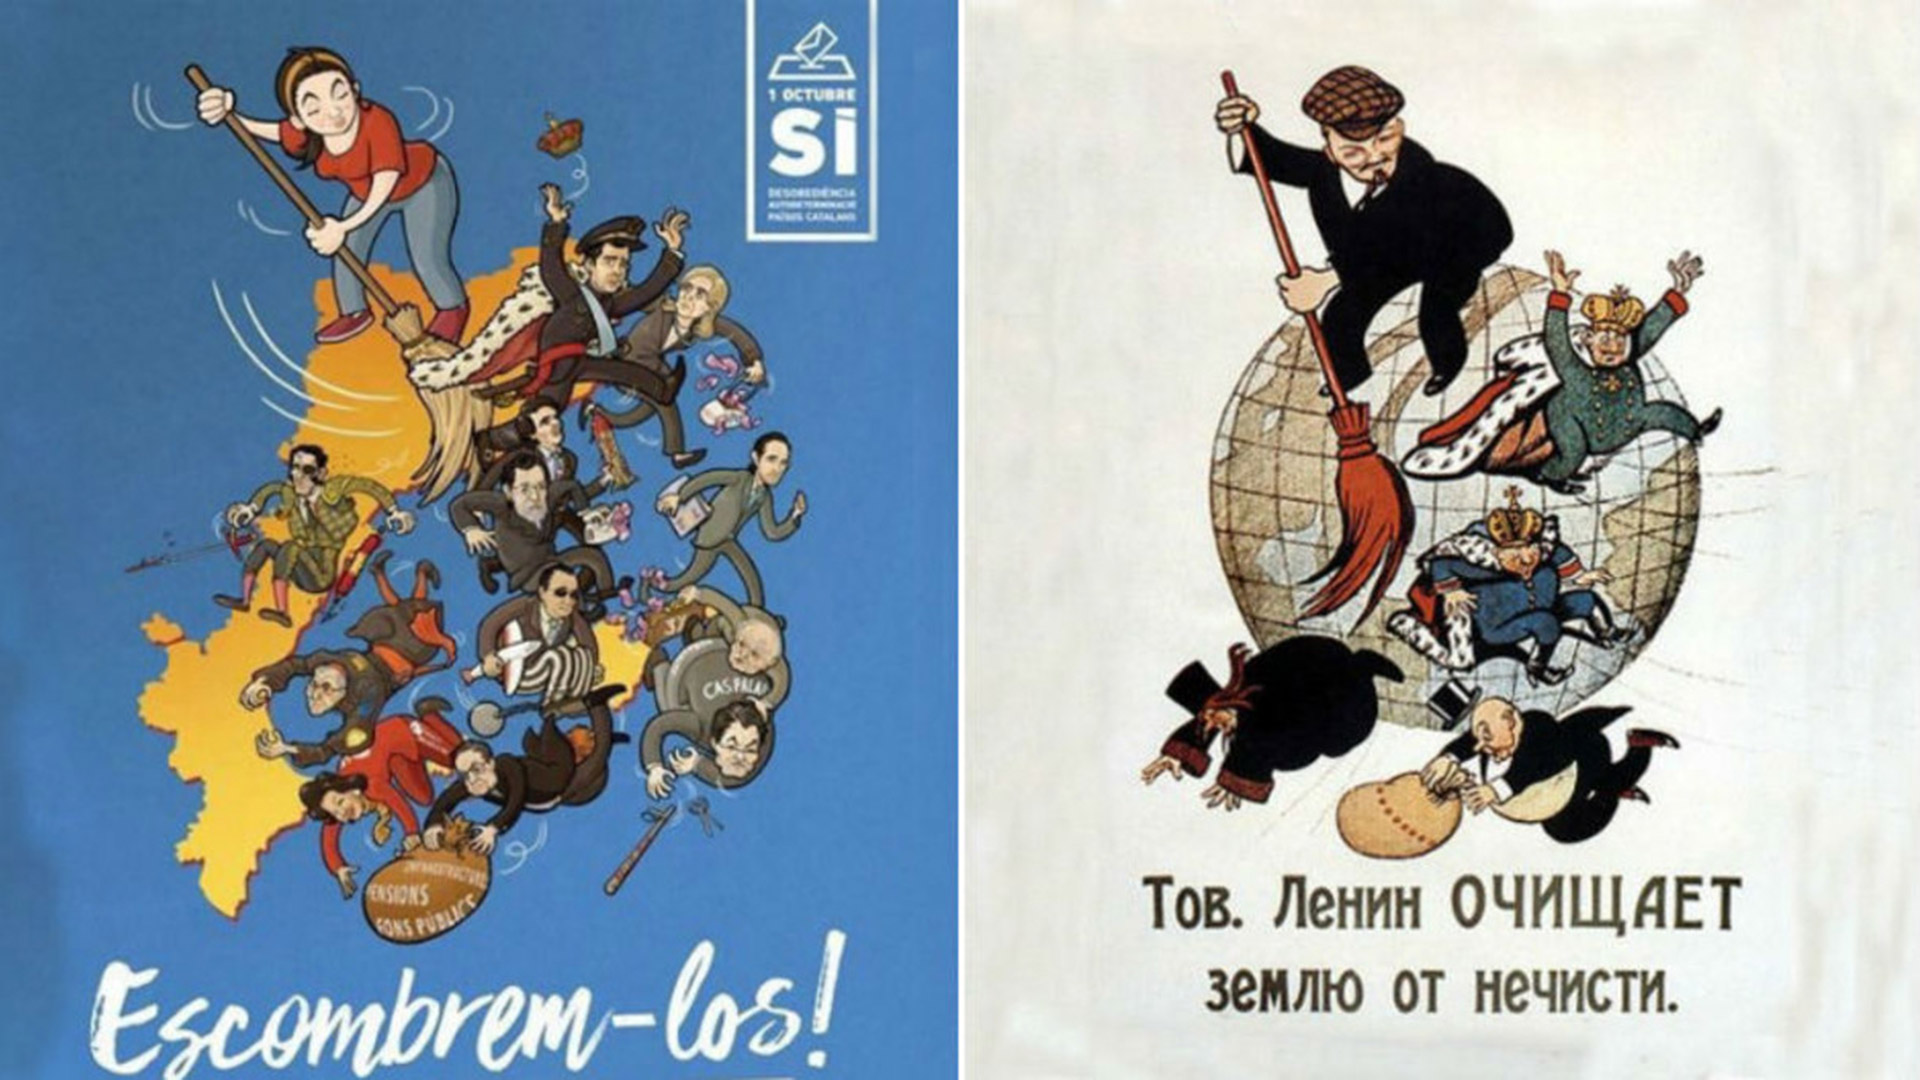 "Barrámoslos": La CUP presenta un cartel de inspiración leninista para el 1-O